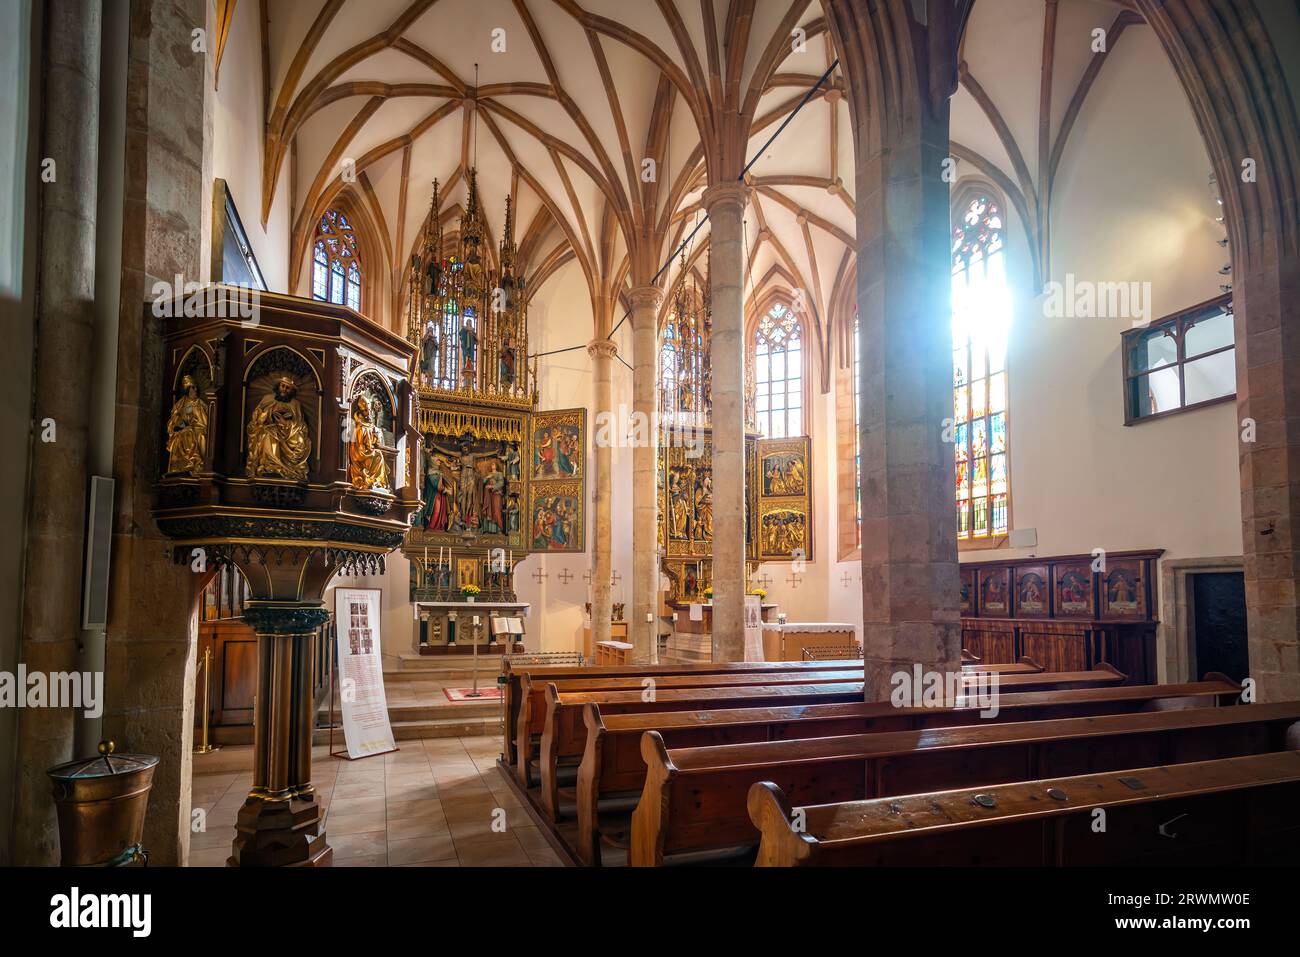 Église catholique intérieure - Hallstatt, Autriche Banque D'Images